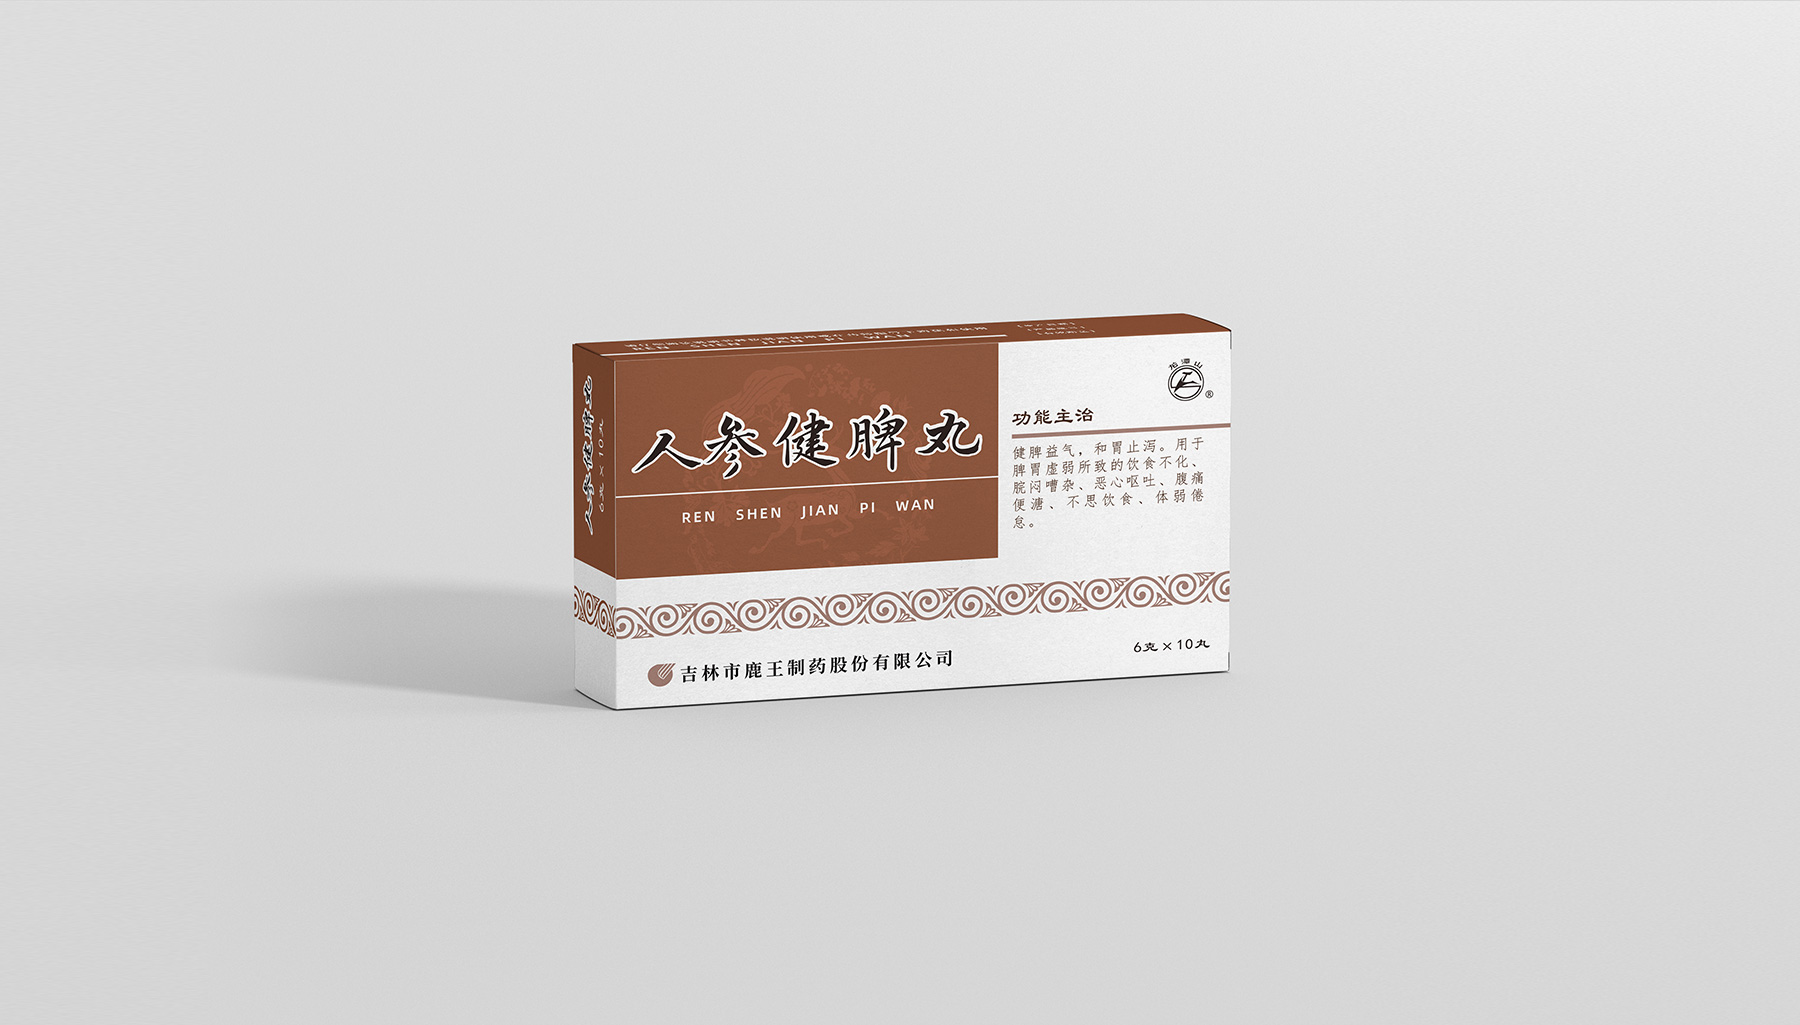 鹿王-中国色药盒系列_10.jpg